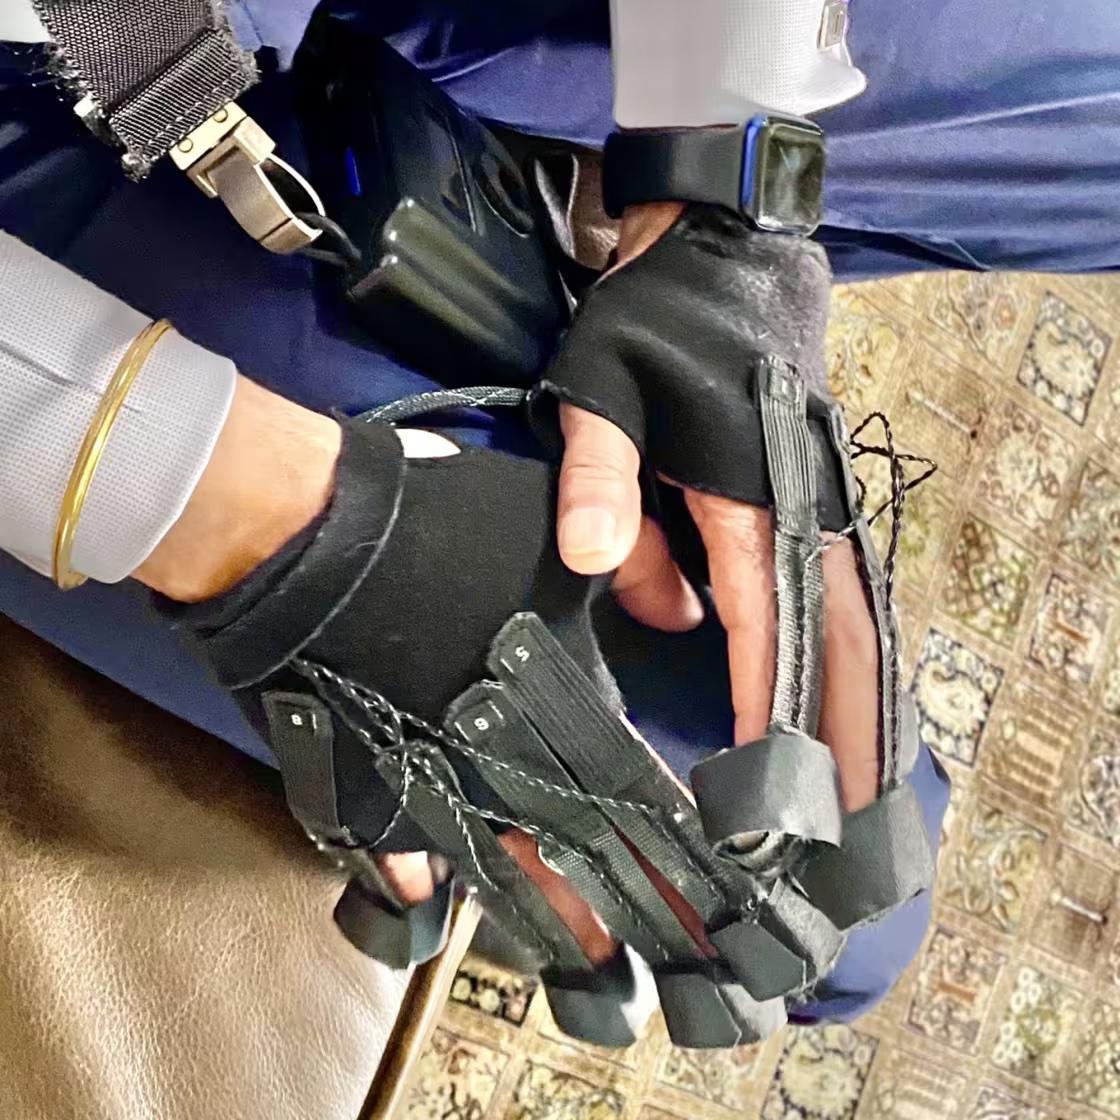 Experimental Glove Treatment Transforms Life for Parkinson's Patient